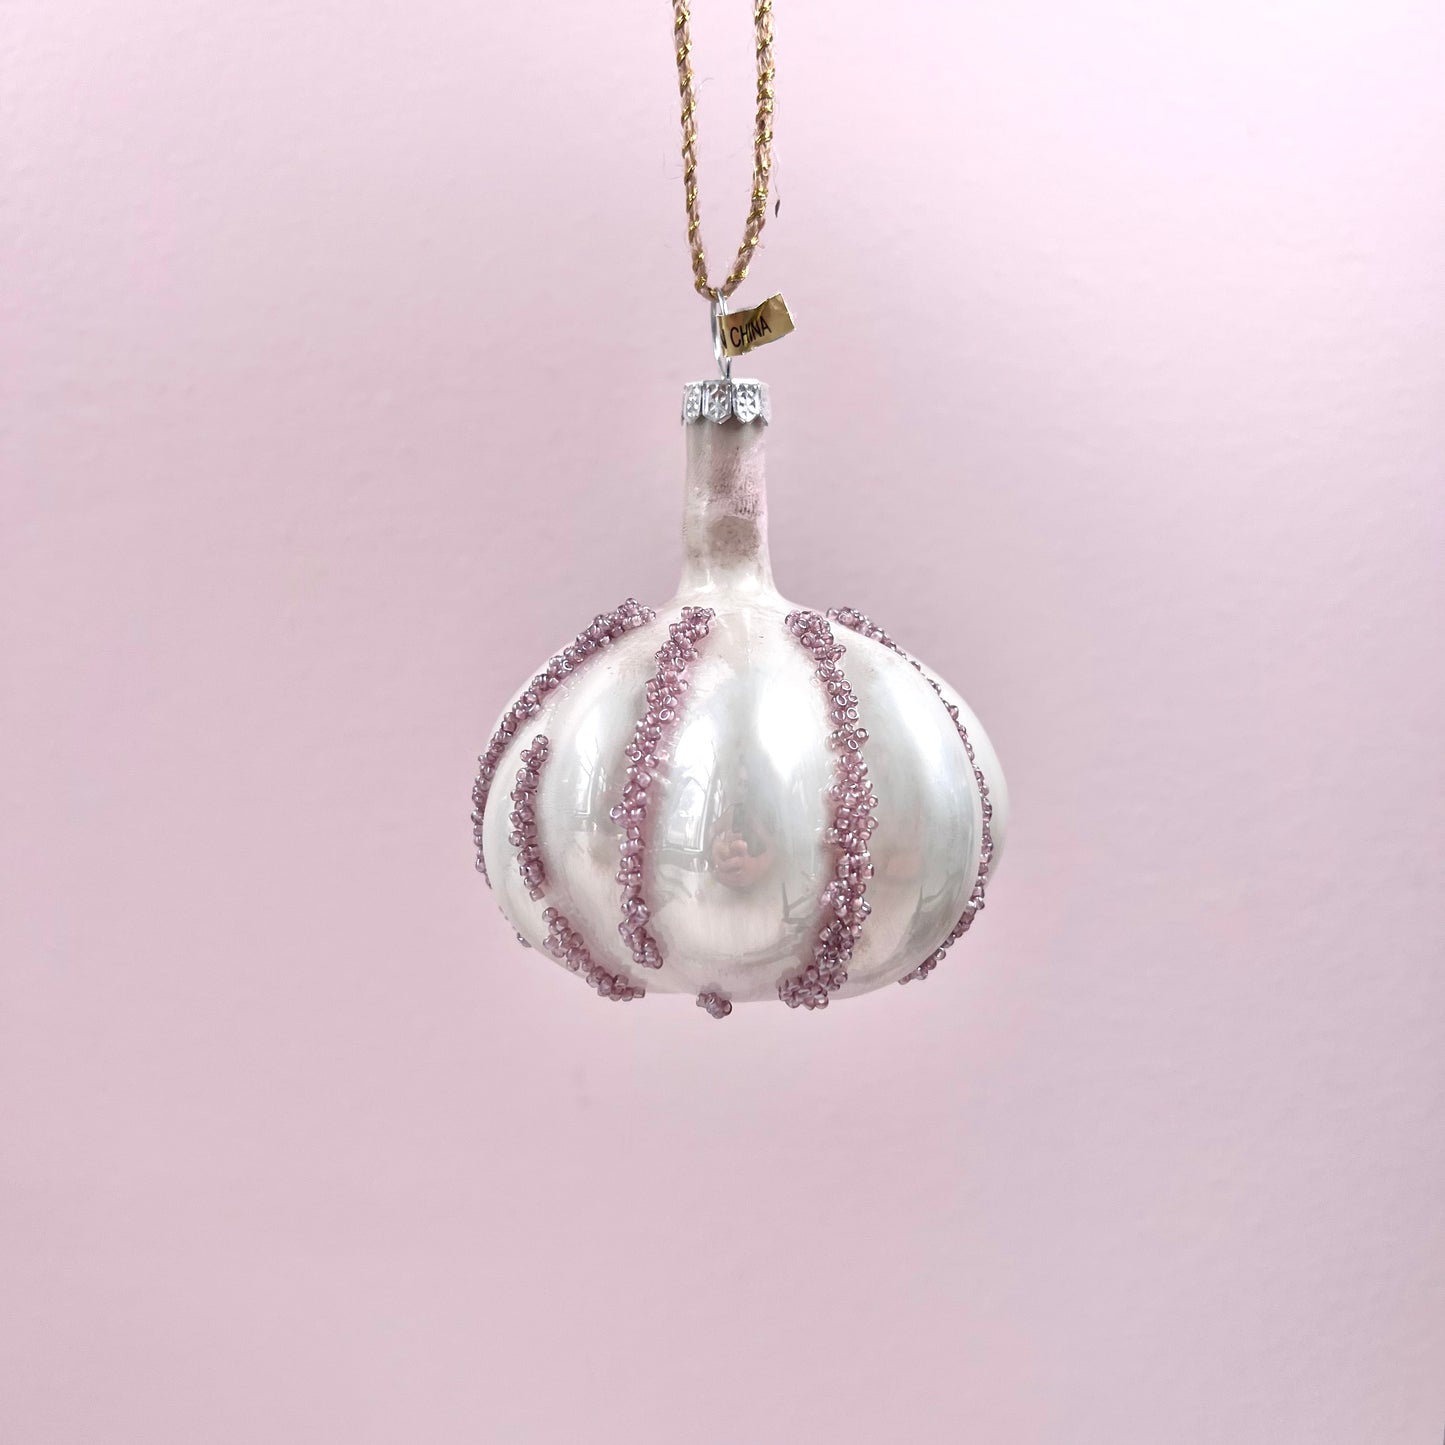 Garlic Bulb Ornament